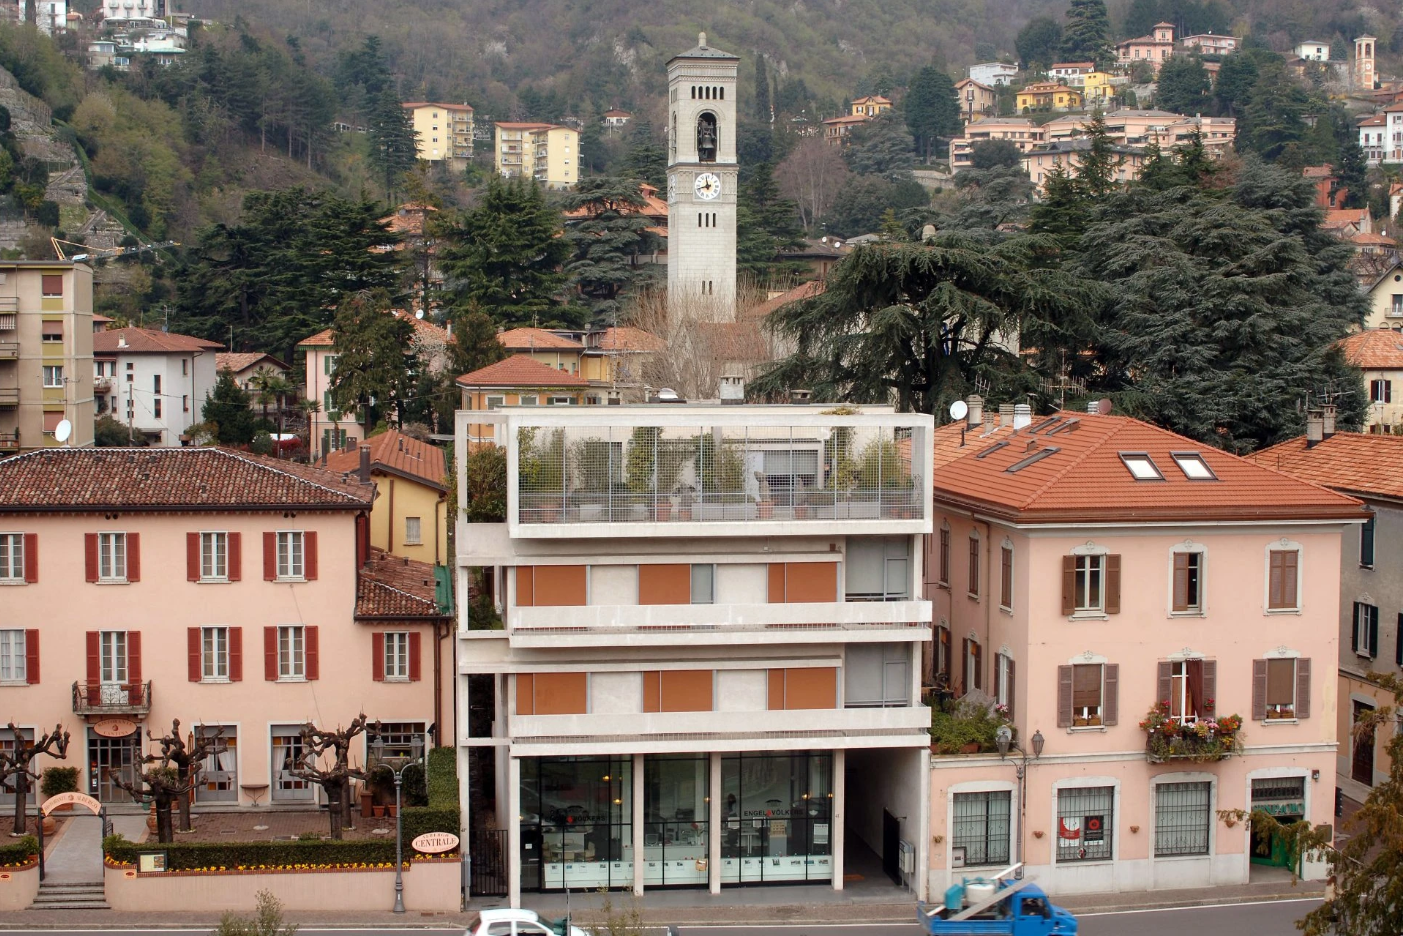 Casa d'affitto - Cernobbio , Como - Arch. Cesare Cattaneo - 1938 - 39 